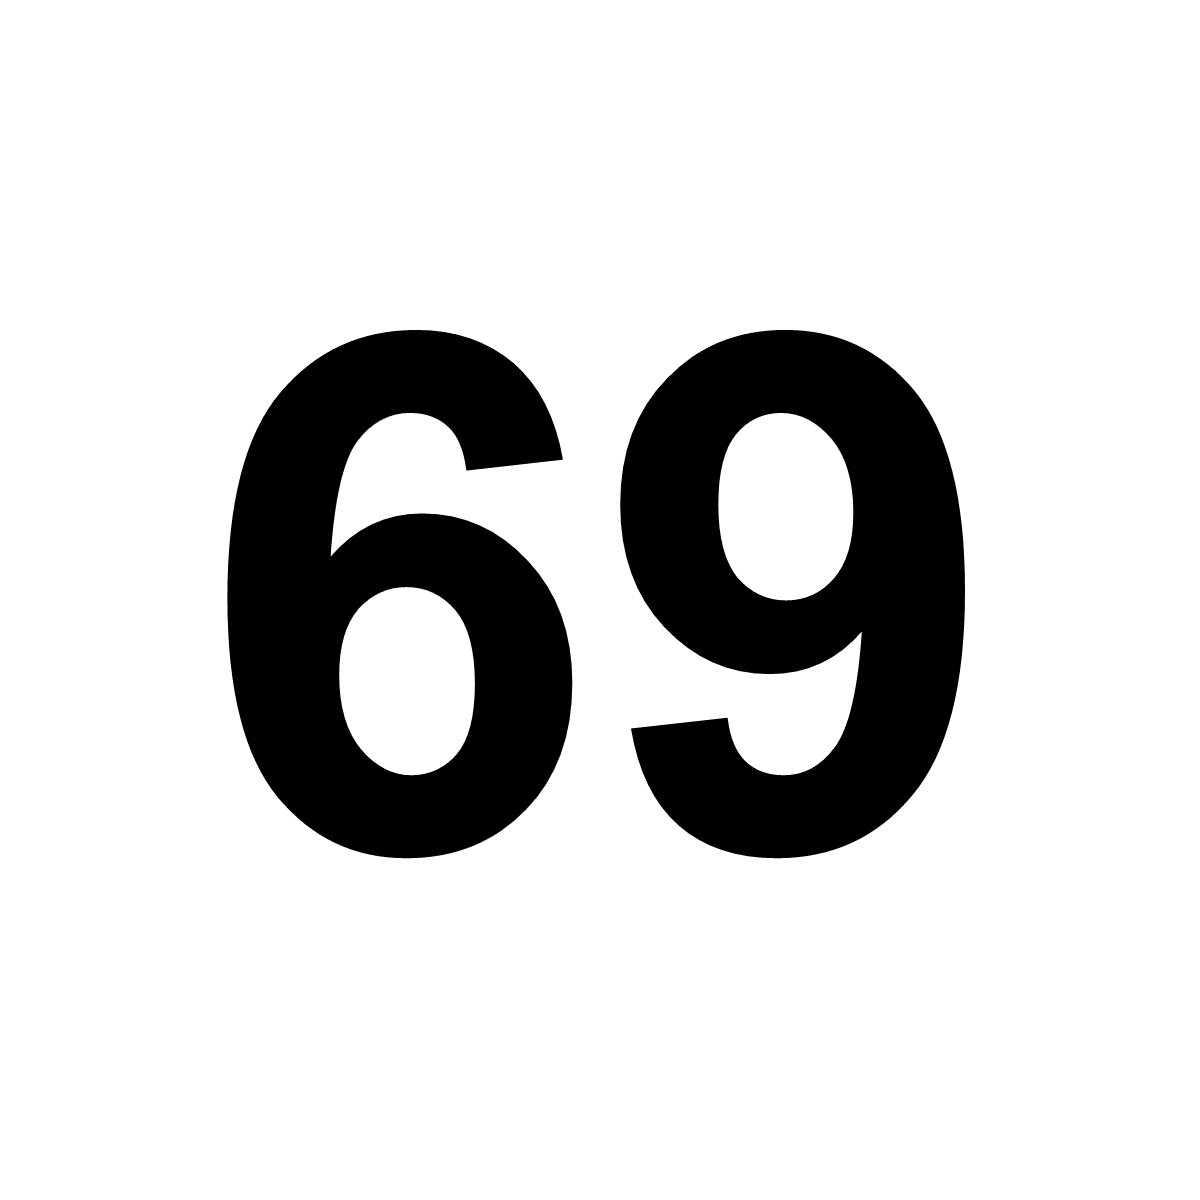 Dekal - 69